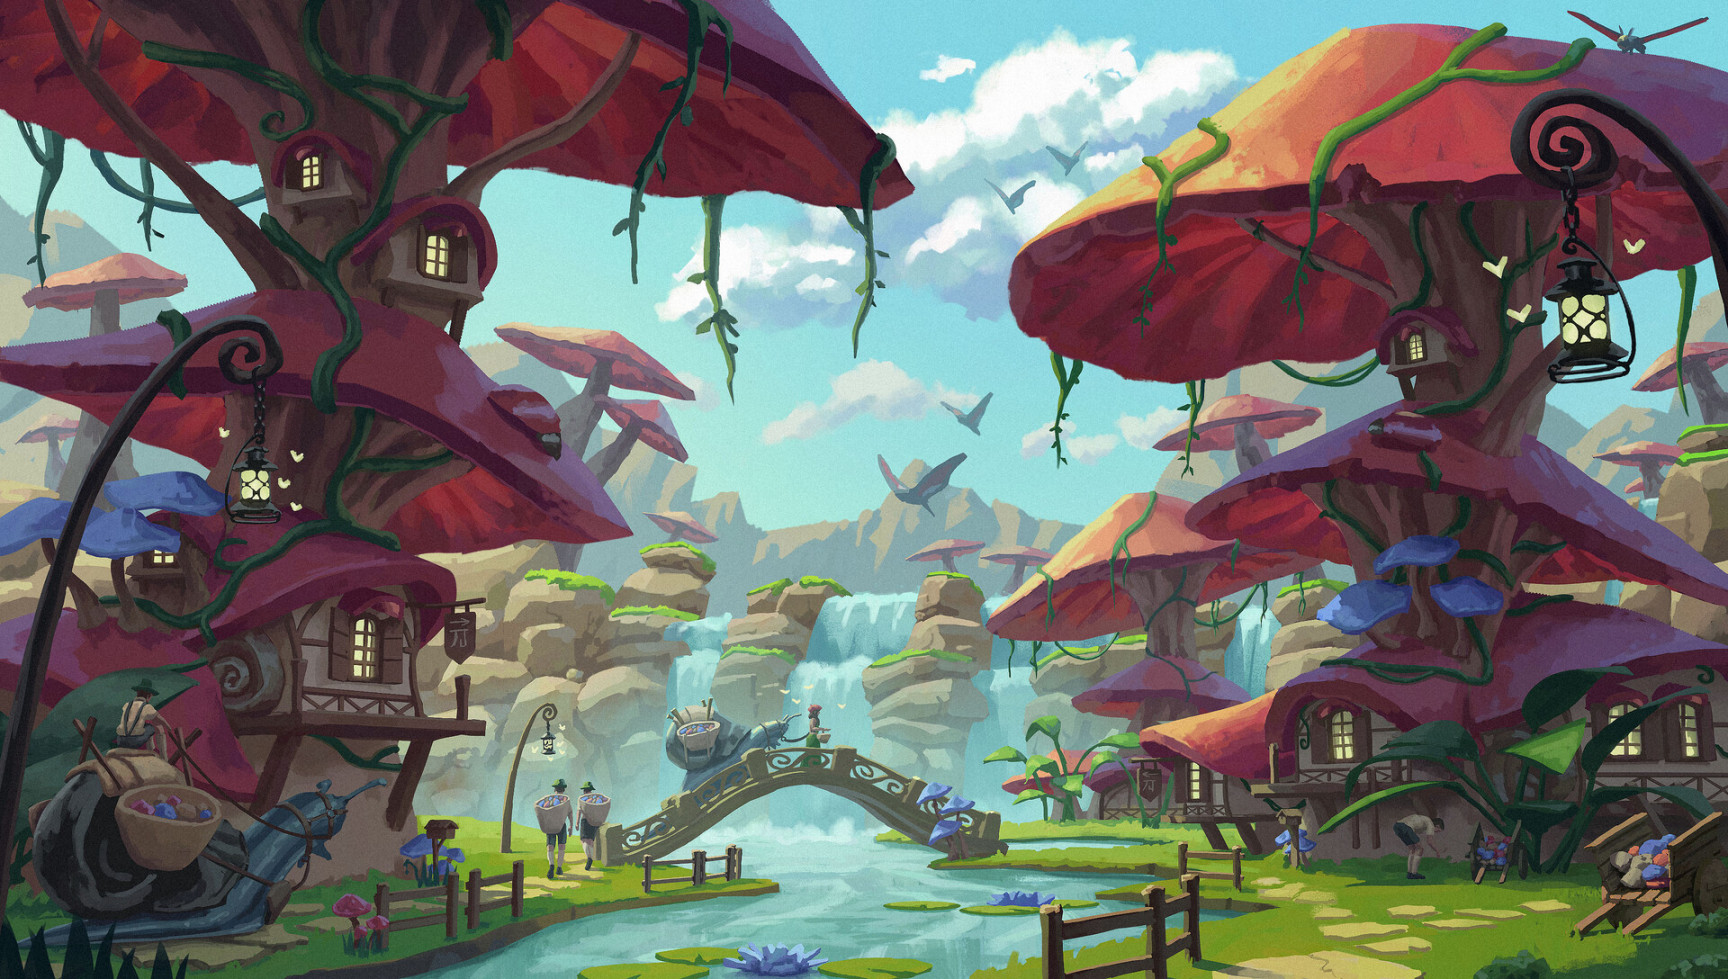 ArtStation - Fantasy Mushroom Village